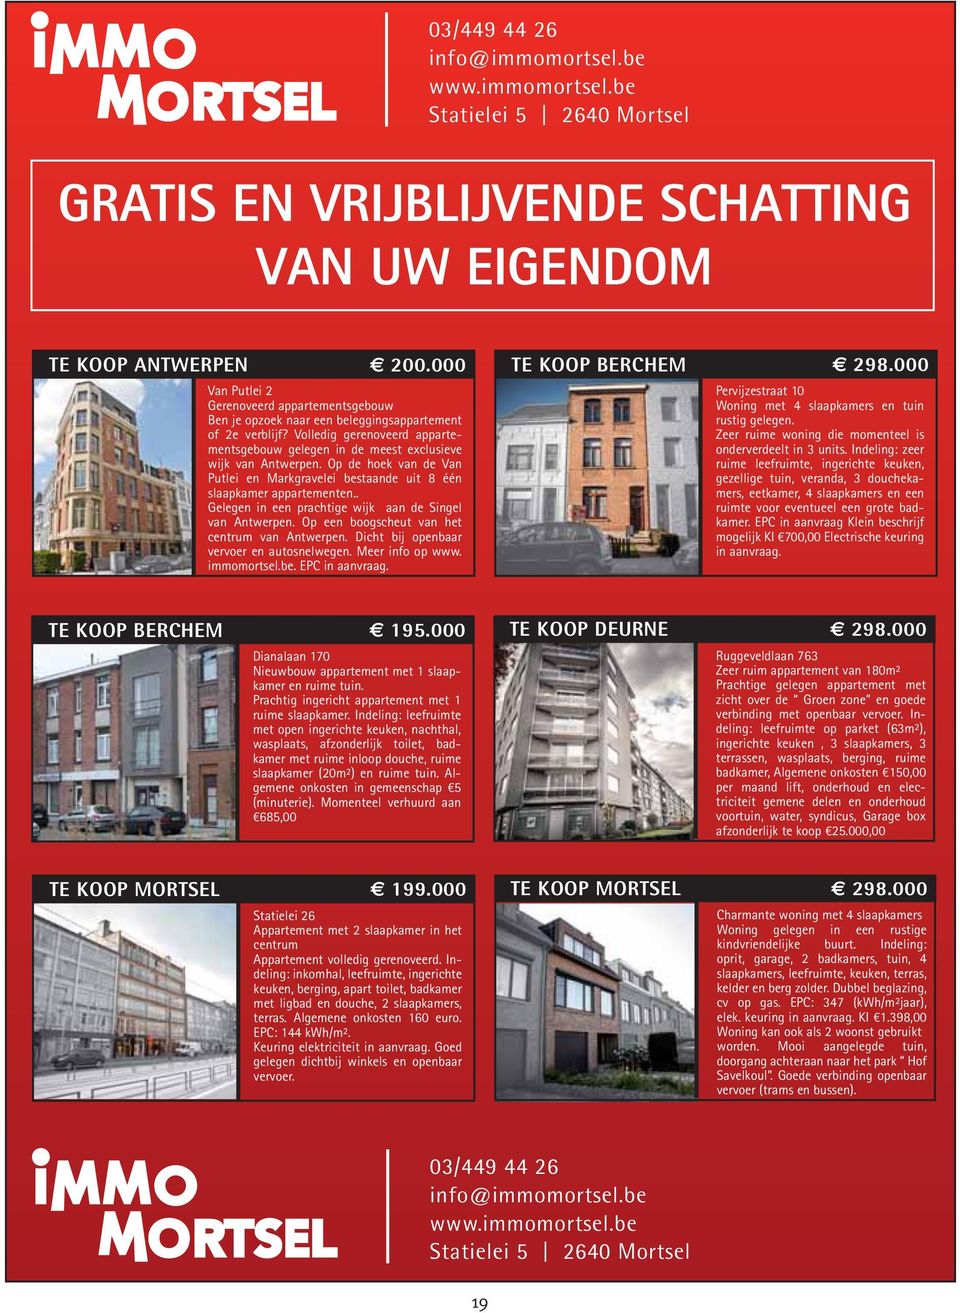 Op de hoek van de Van Putlei en Markgravelei bestaande uit 8 één slaapkamer appartementen.. Gelegen in een prachtige wijk aan de Singel van Antwerpen. Op een boogscheut van het centrum van Antwerpen.